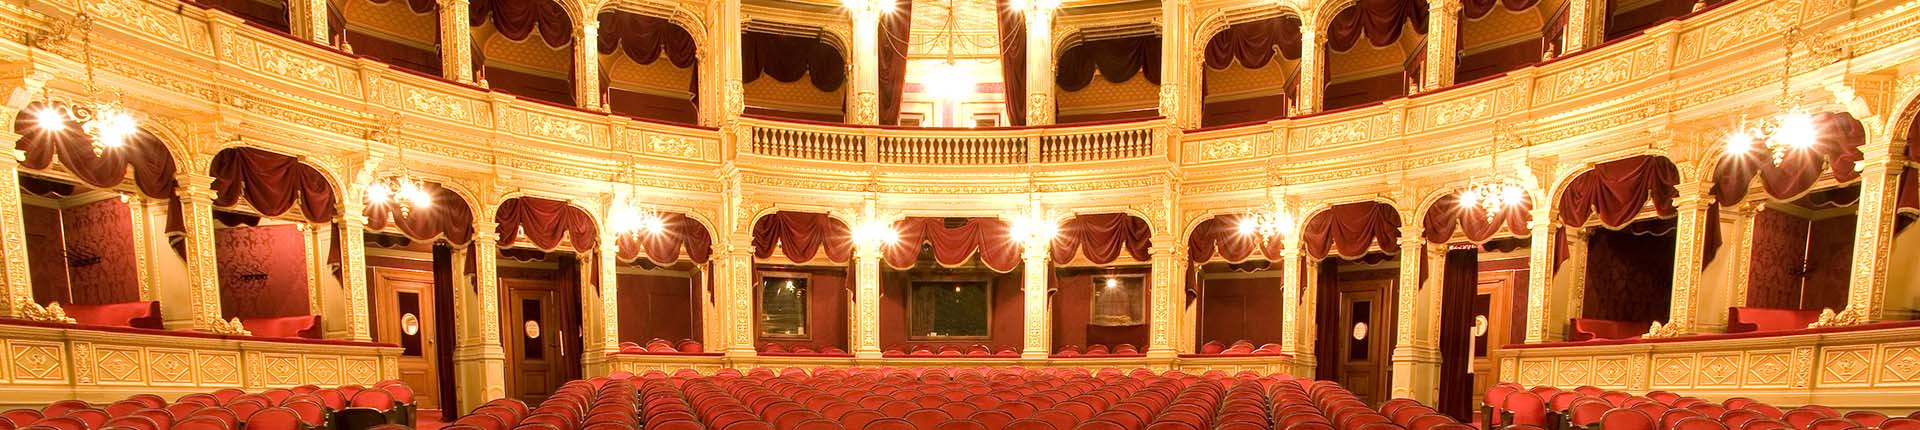 teatro con poltrone rosse e cornici d'oro